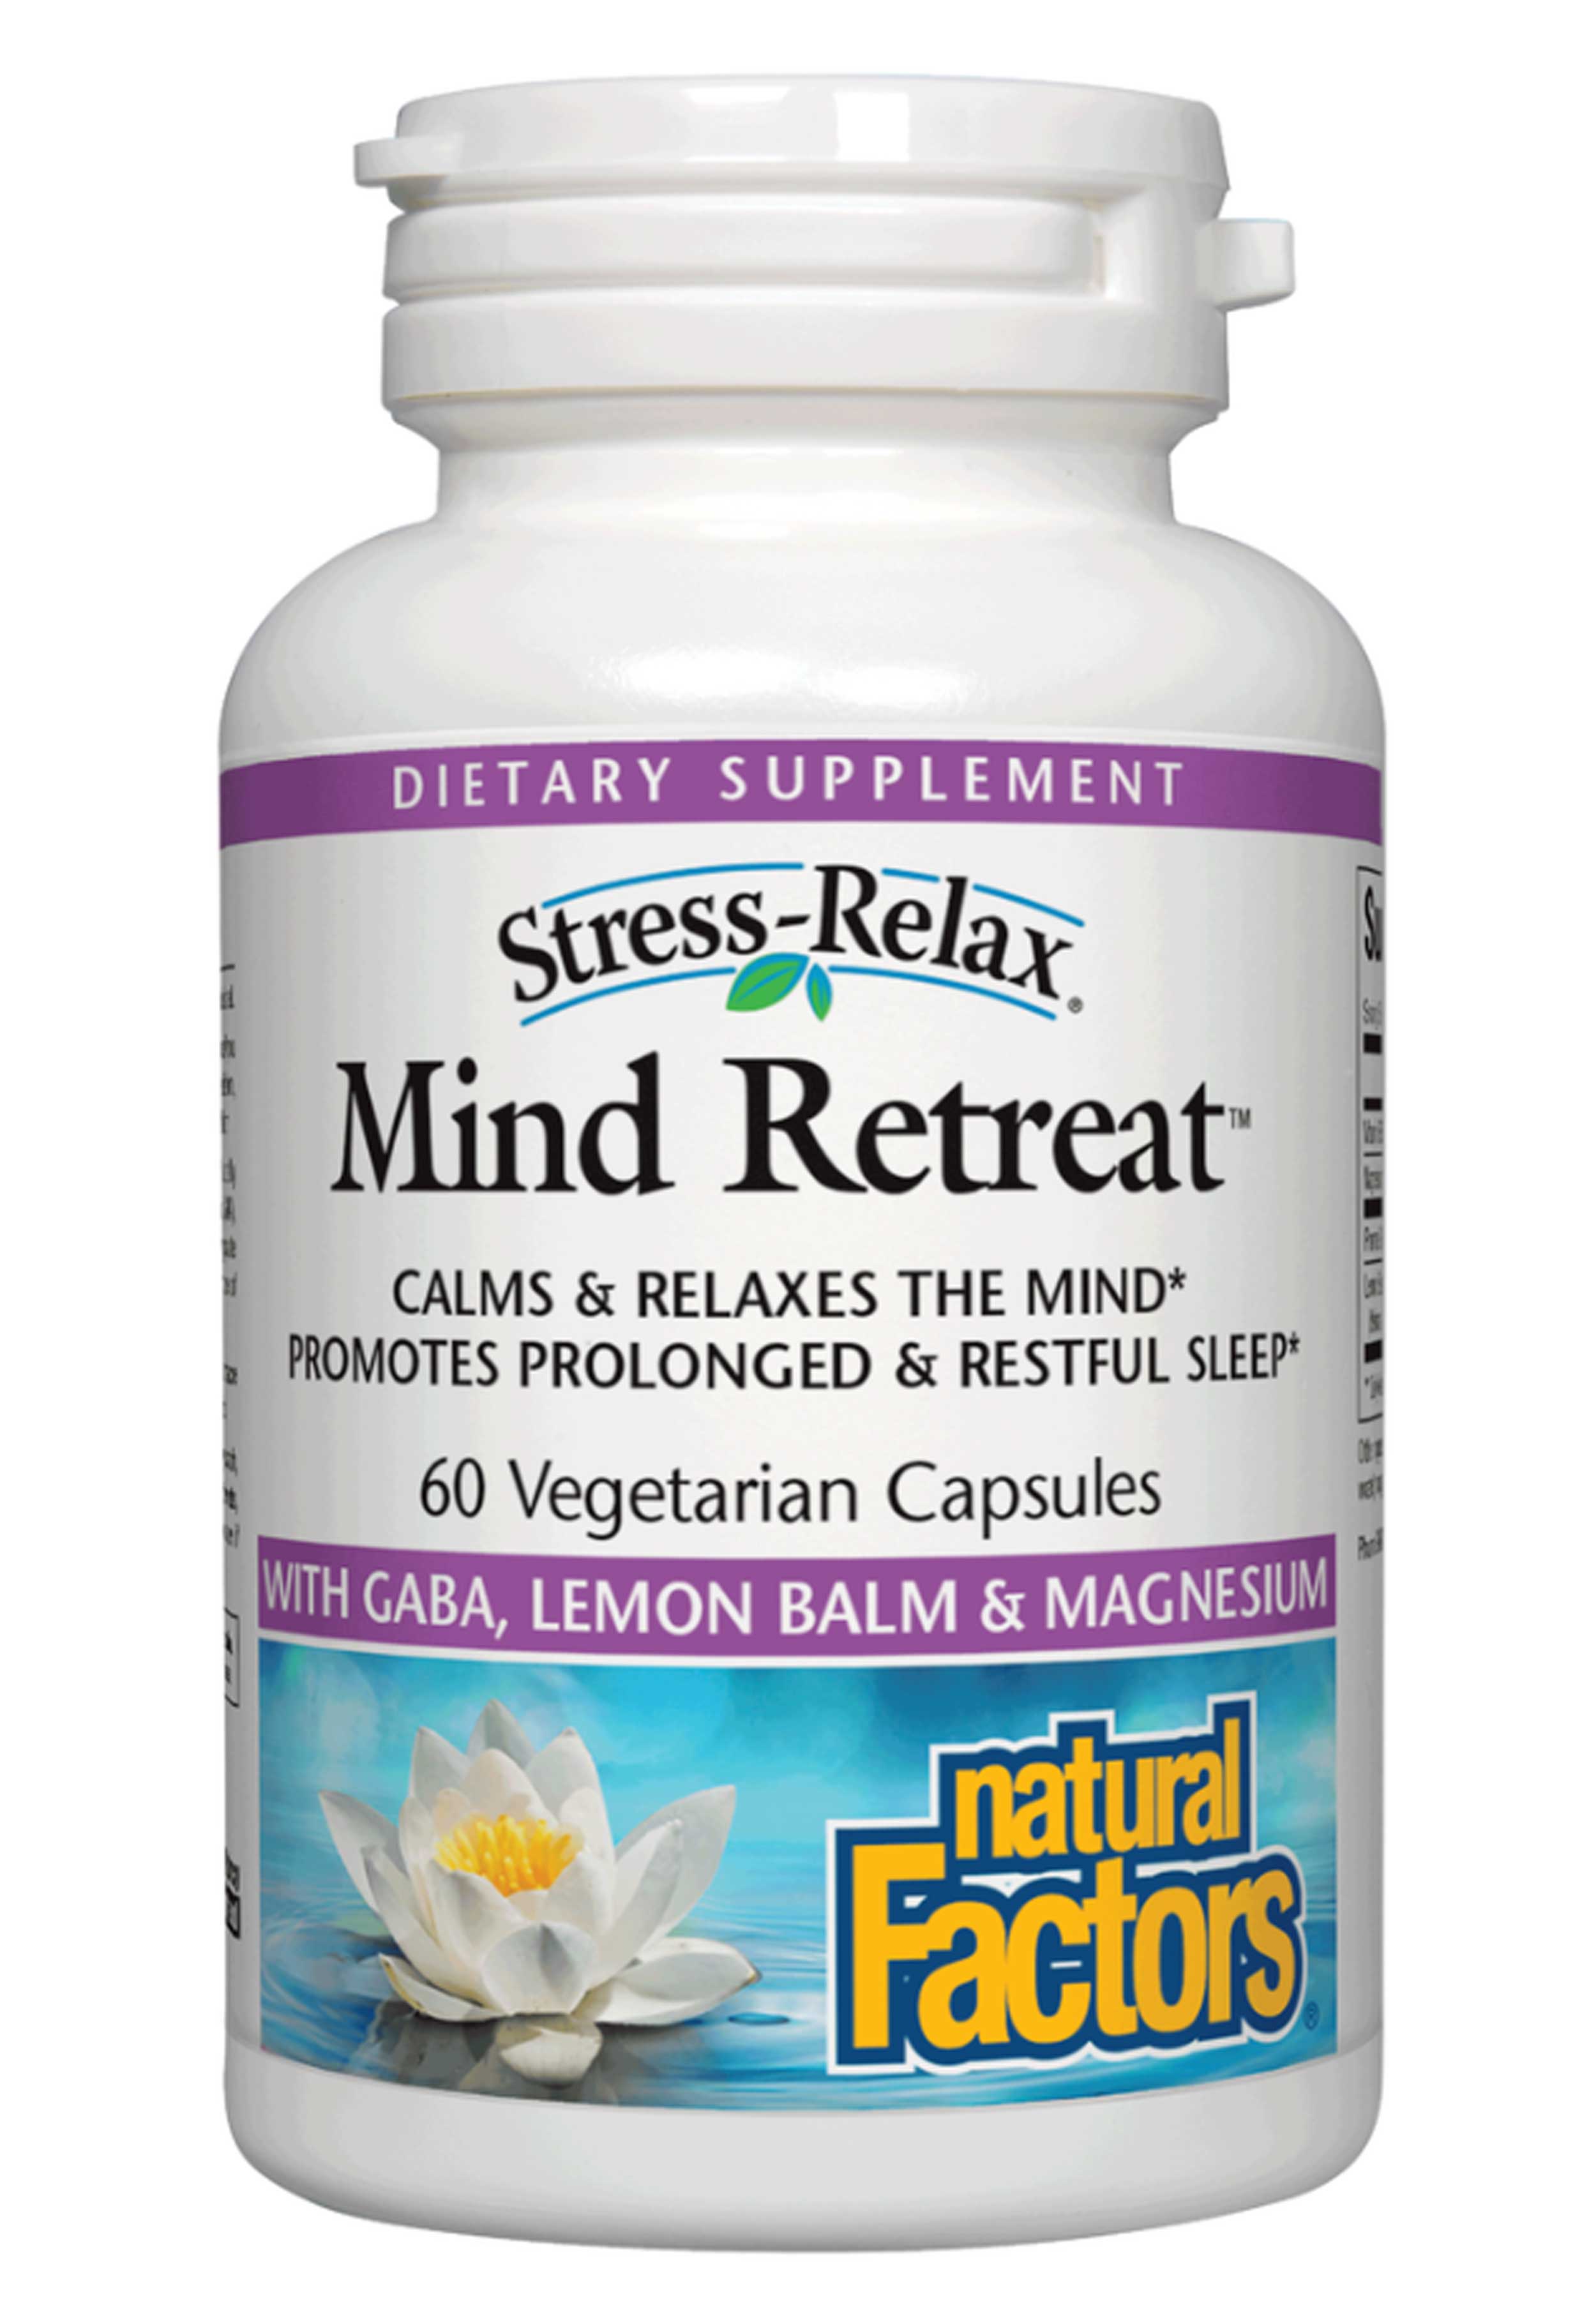 Natural Factors Stress Relax Mind Retreat